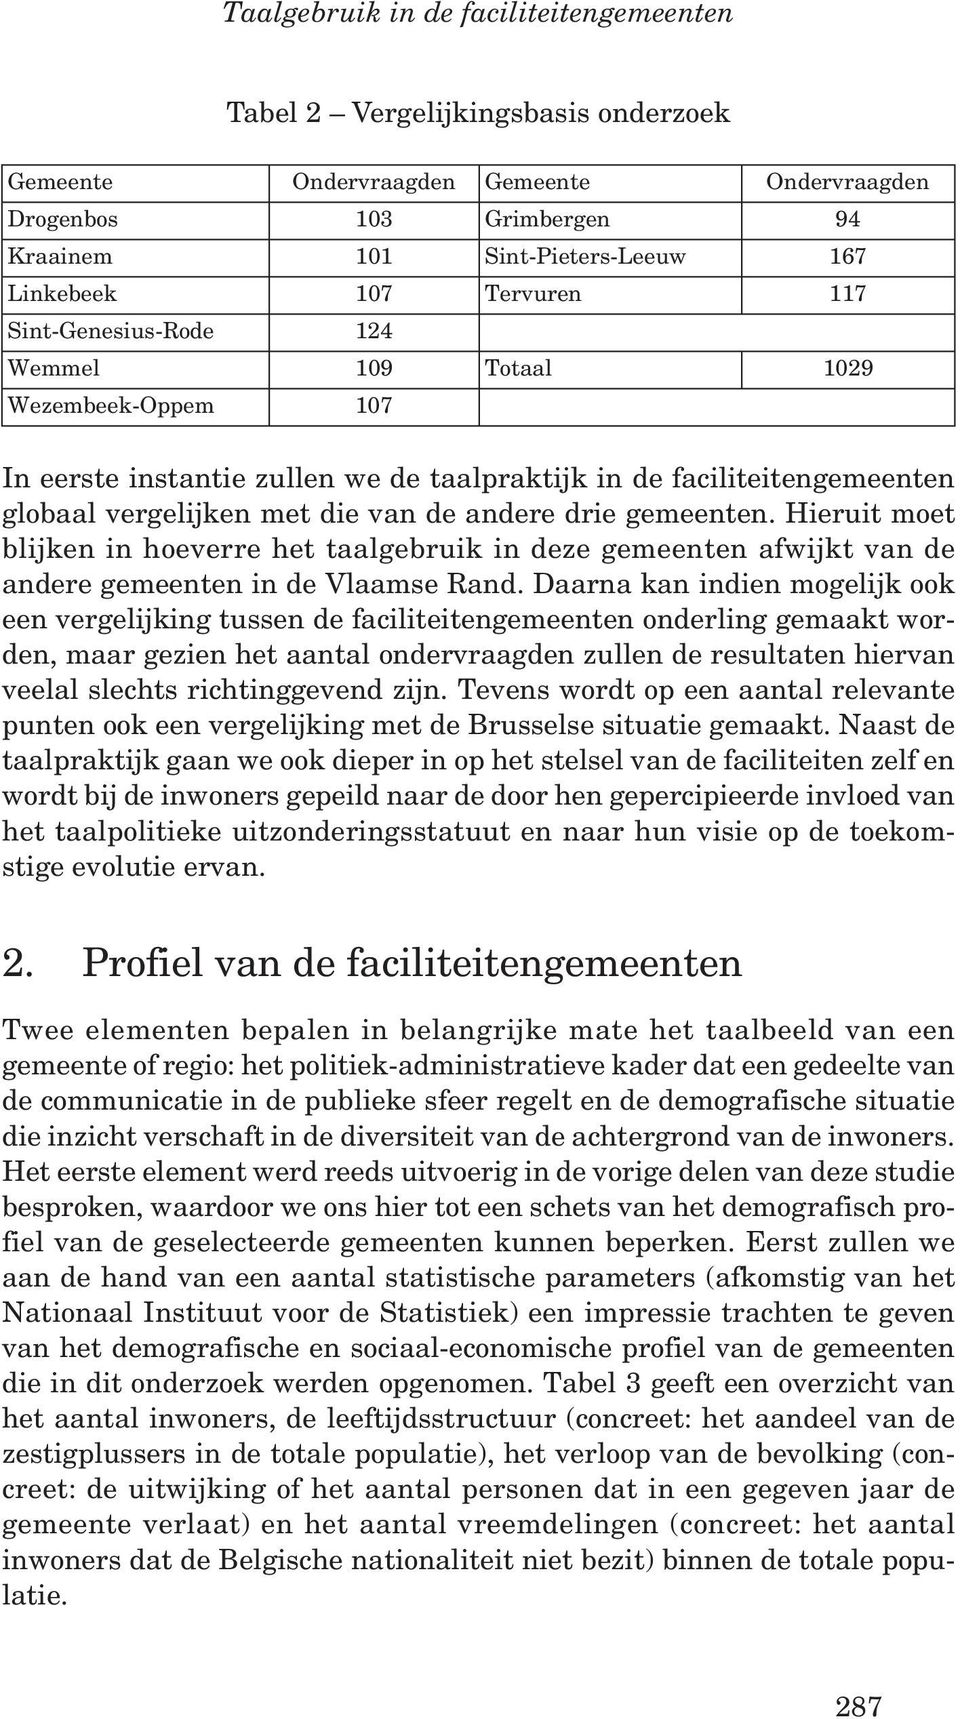 drie gemeenten. Hieruit moet blijken in hoeverre het taalgebruik in deze gemeenten afwijkt van de andere gemeenten in de Vlaamse Rand.